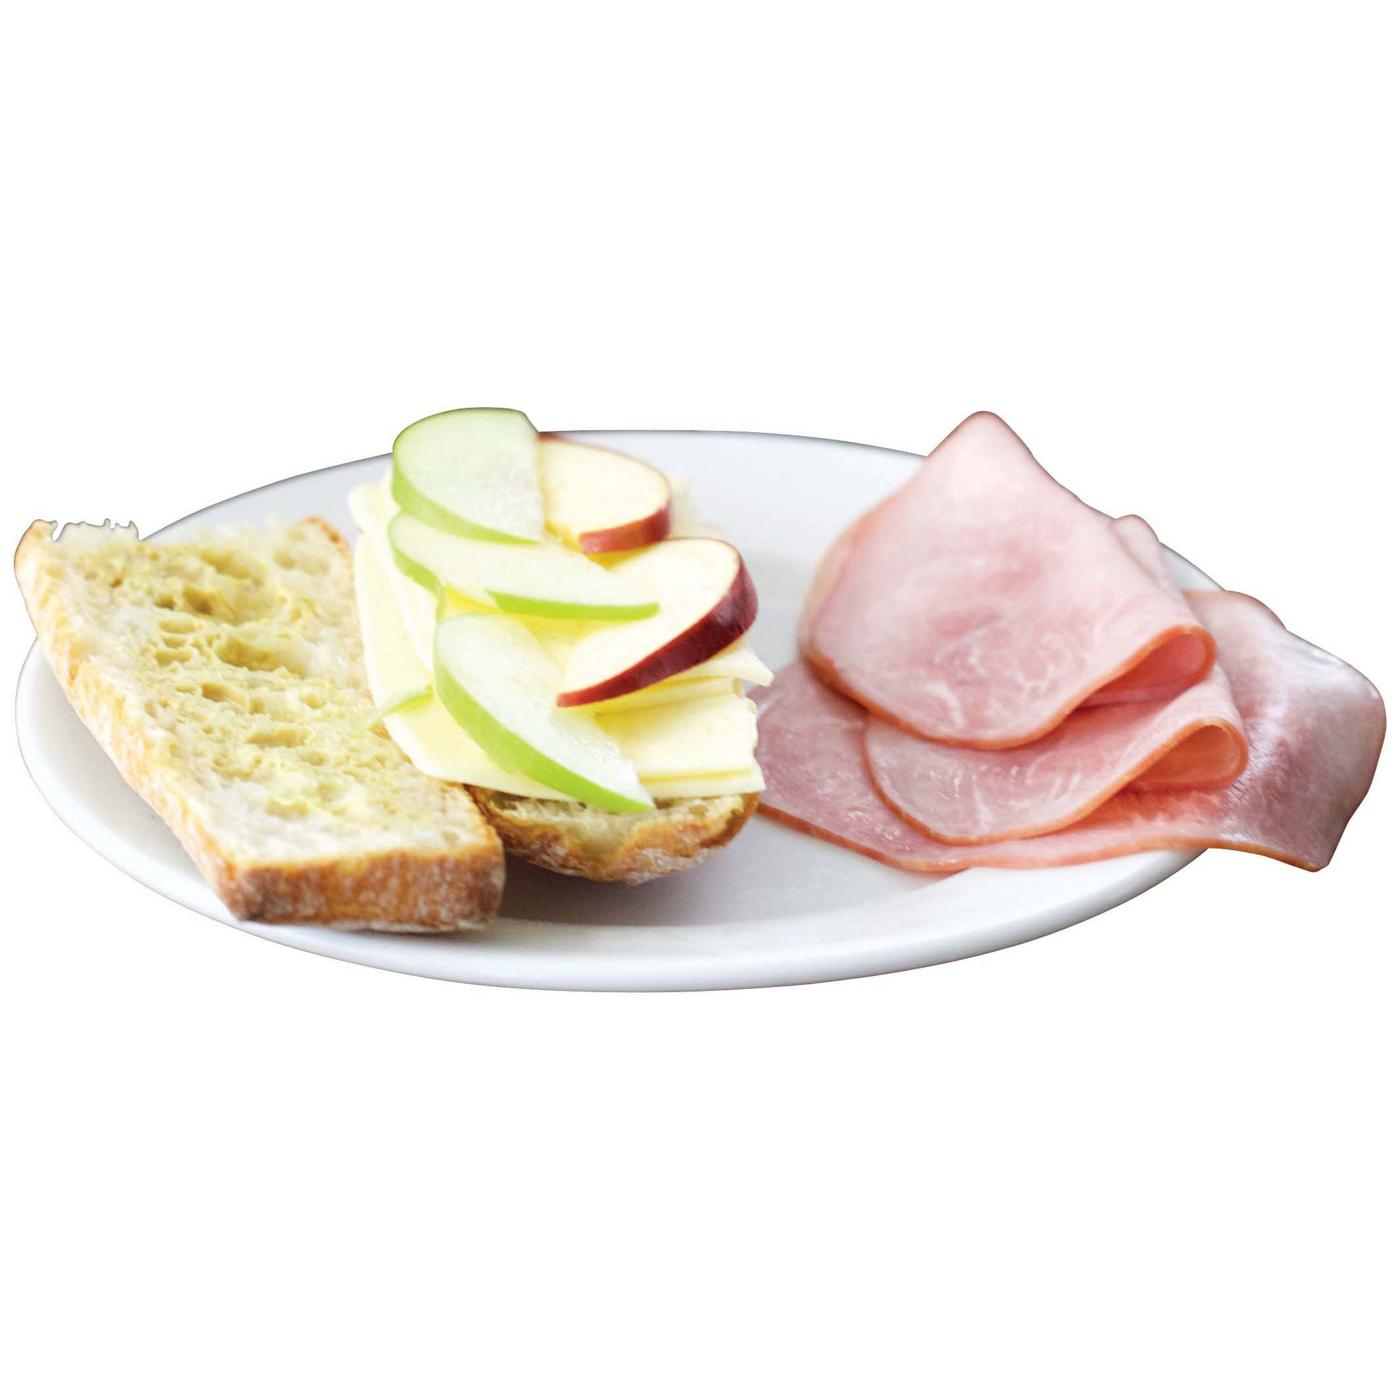 Applegate Organics Uncured Black Forest Ham Sliced; image 2 of 2